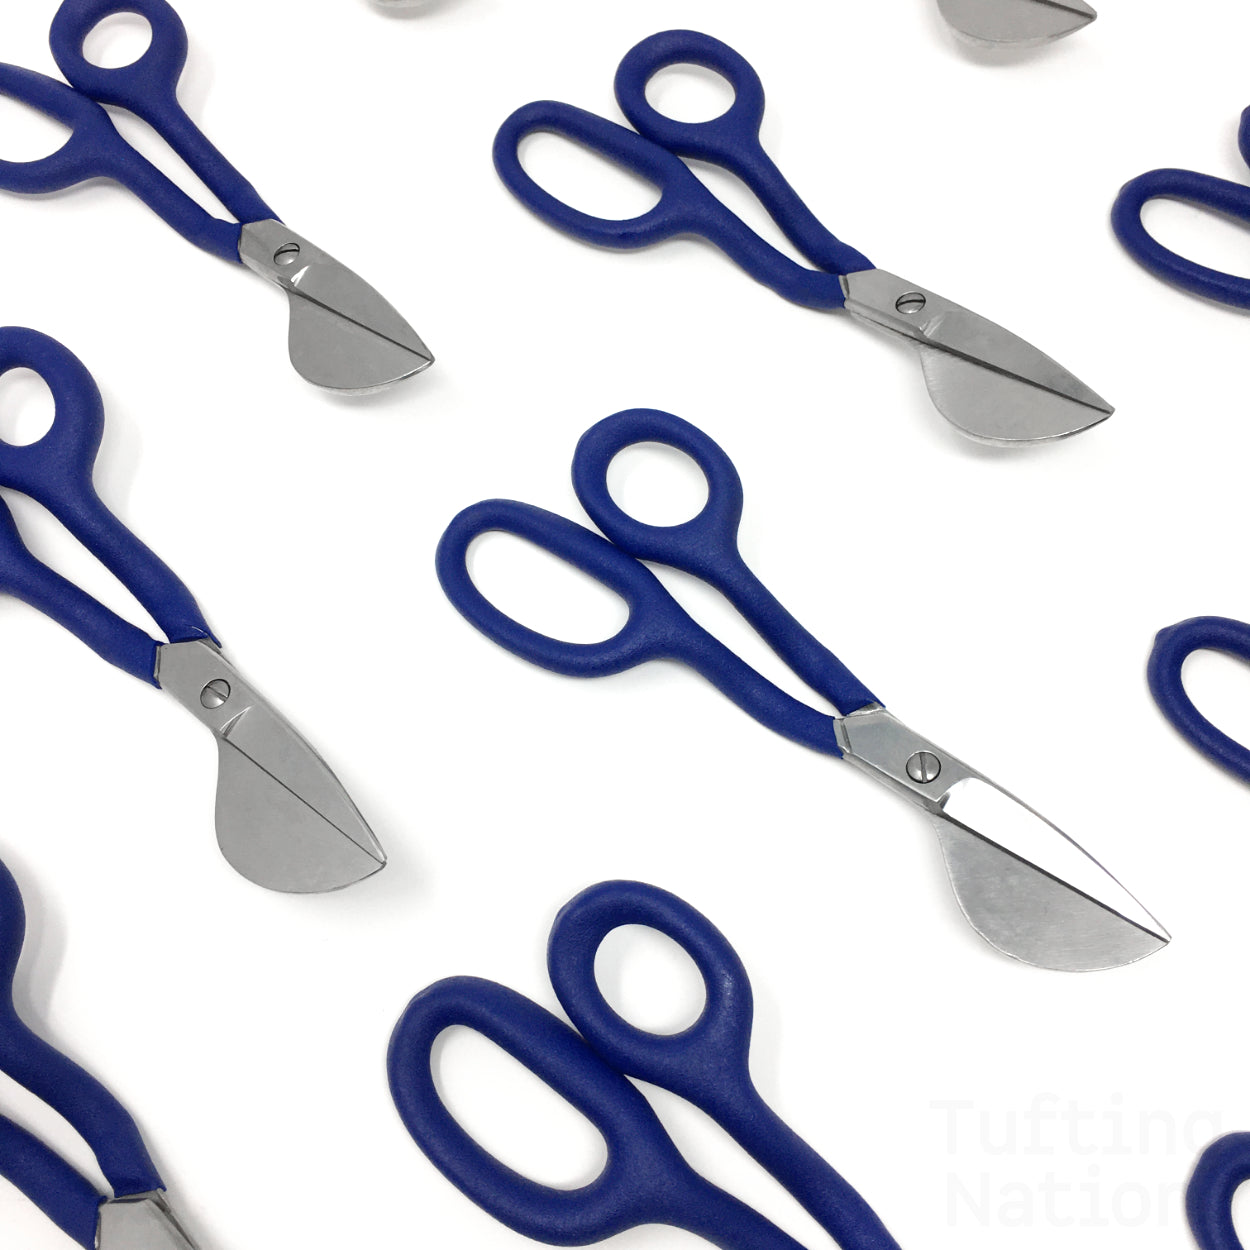 Duckbill scissors